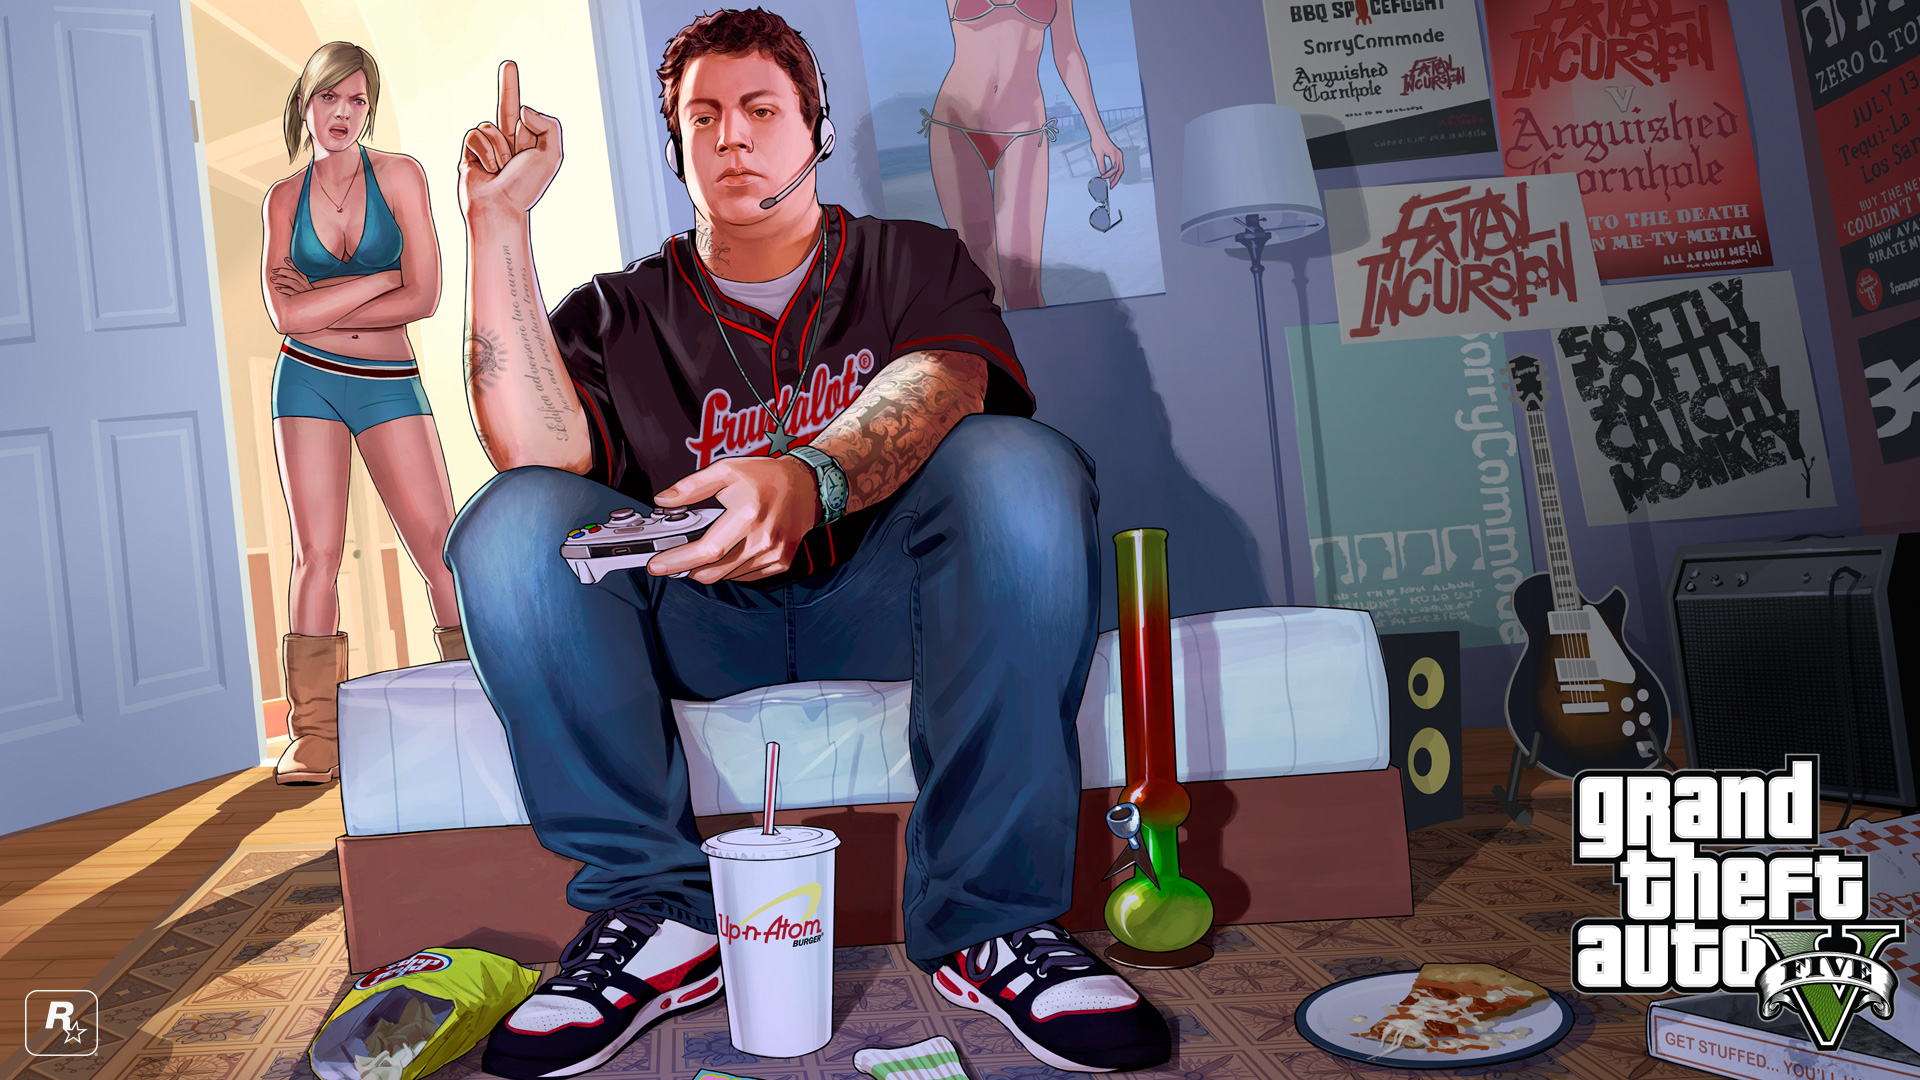 Fond Ecran Wallpaper Grand Theft Auto Jeuxvideo Fr